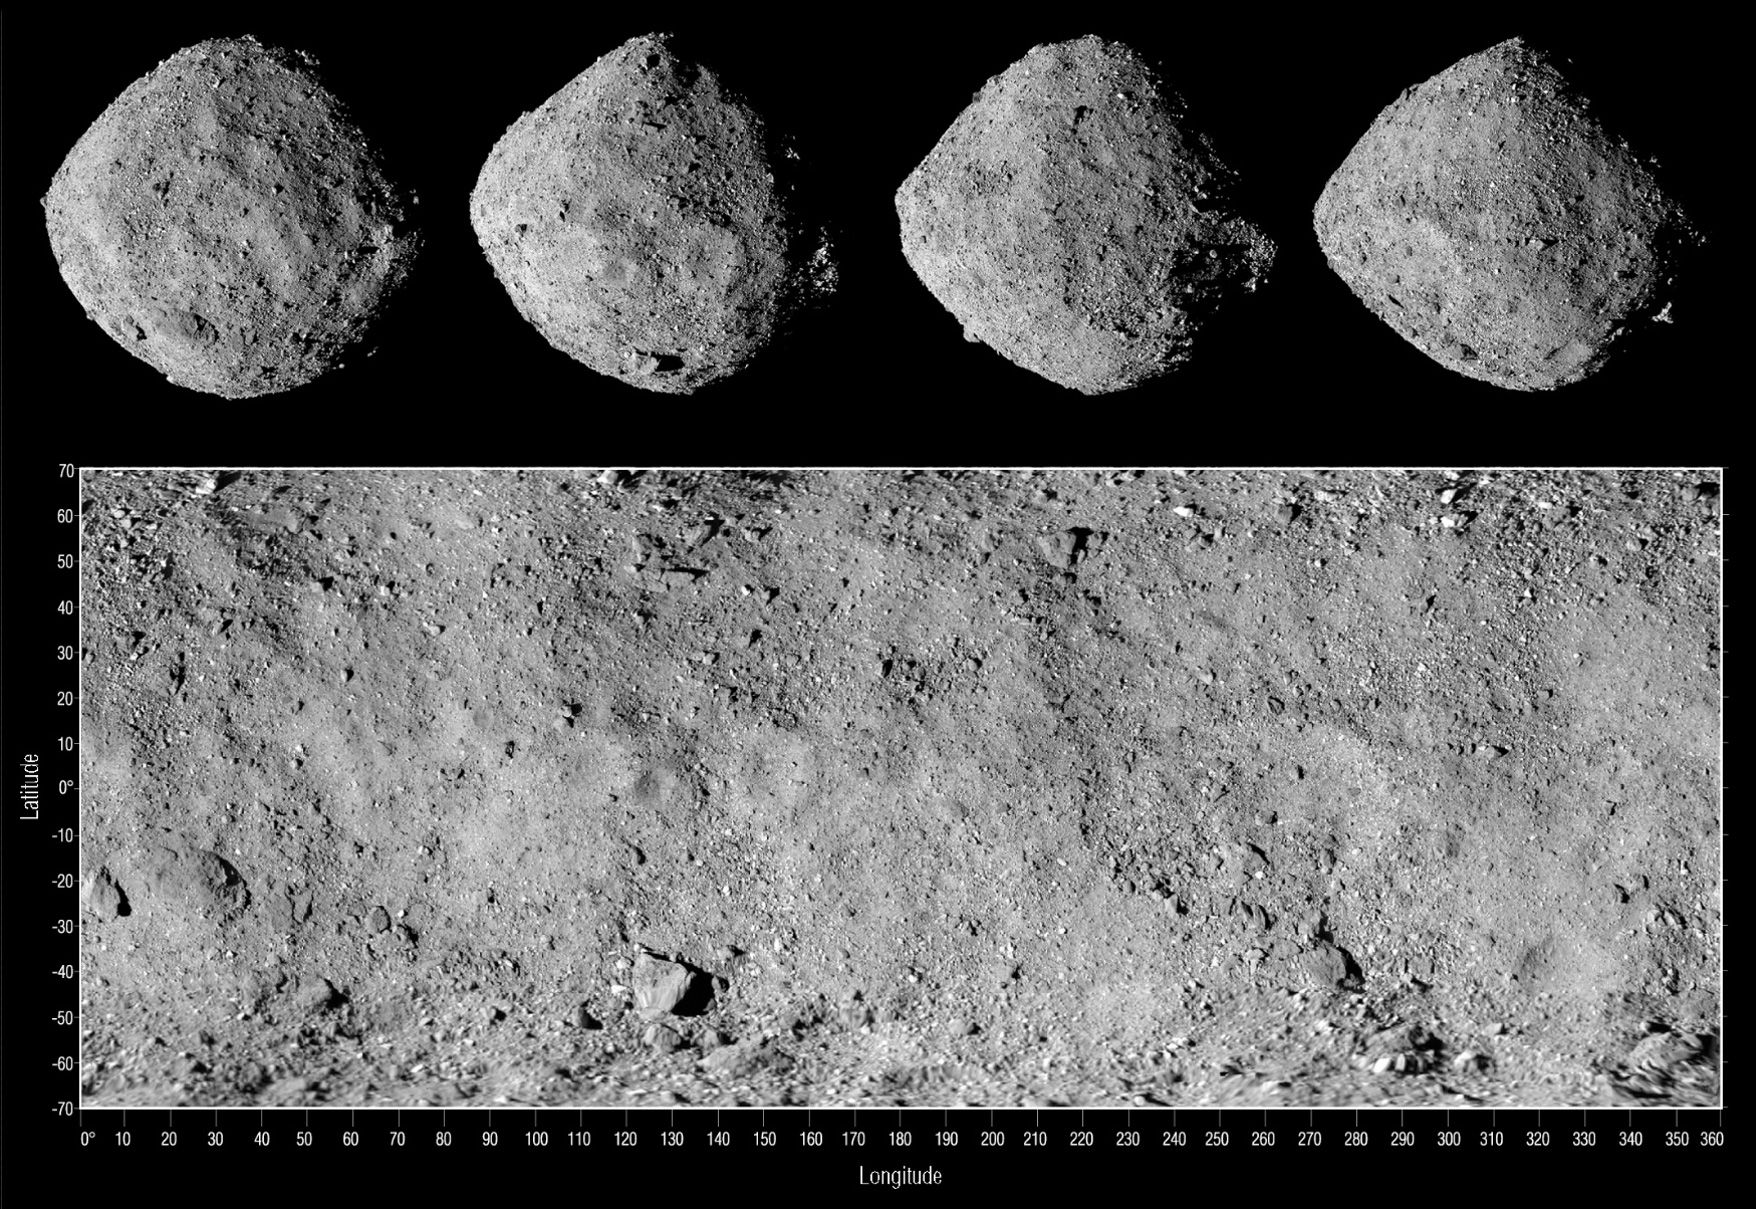 bennu-asteroidinden-ornek-tasiyan-uzay-araci-dunyaya-geri-donuyor-3166-dhaphoto2.jpg